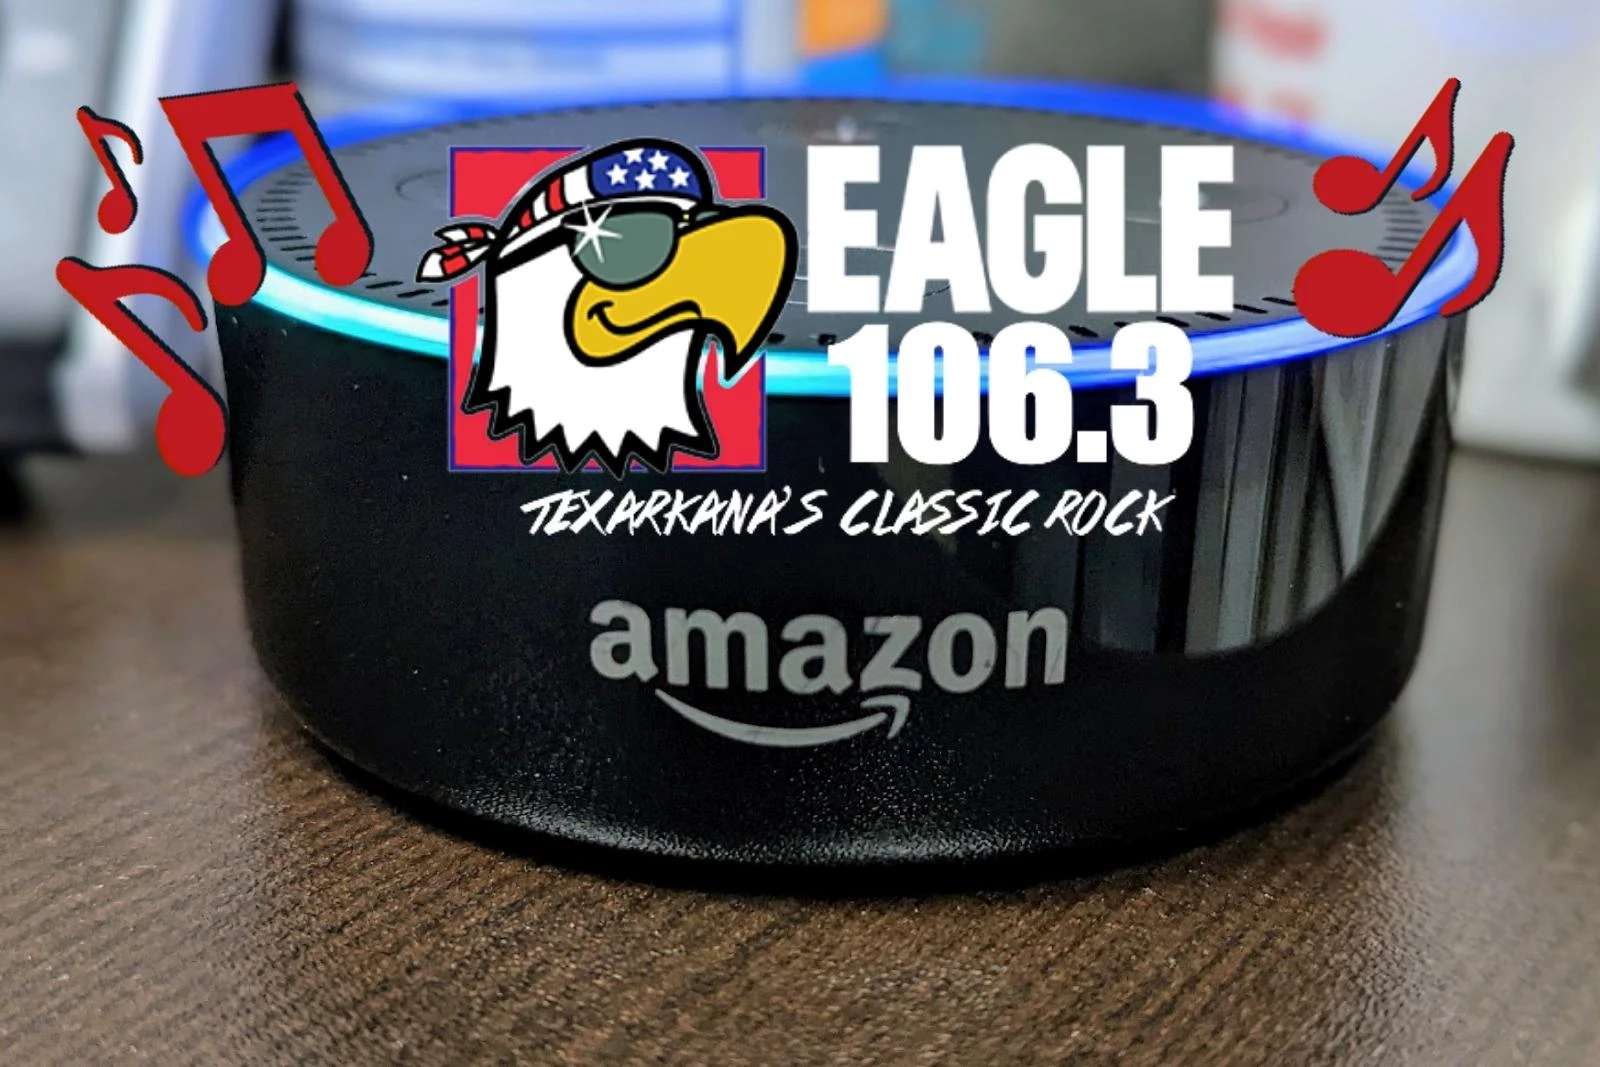 Listen on Alexa - 106.9 The Eagle